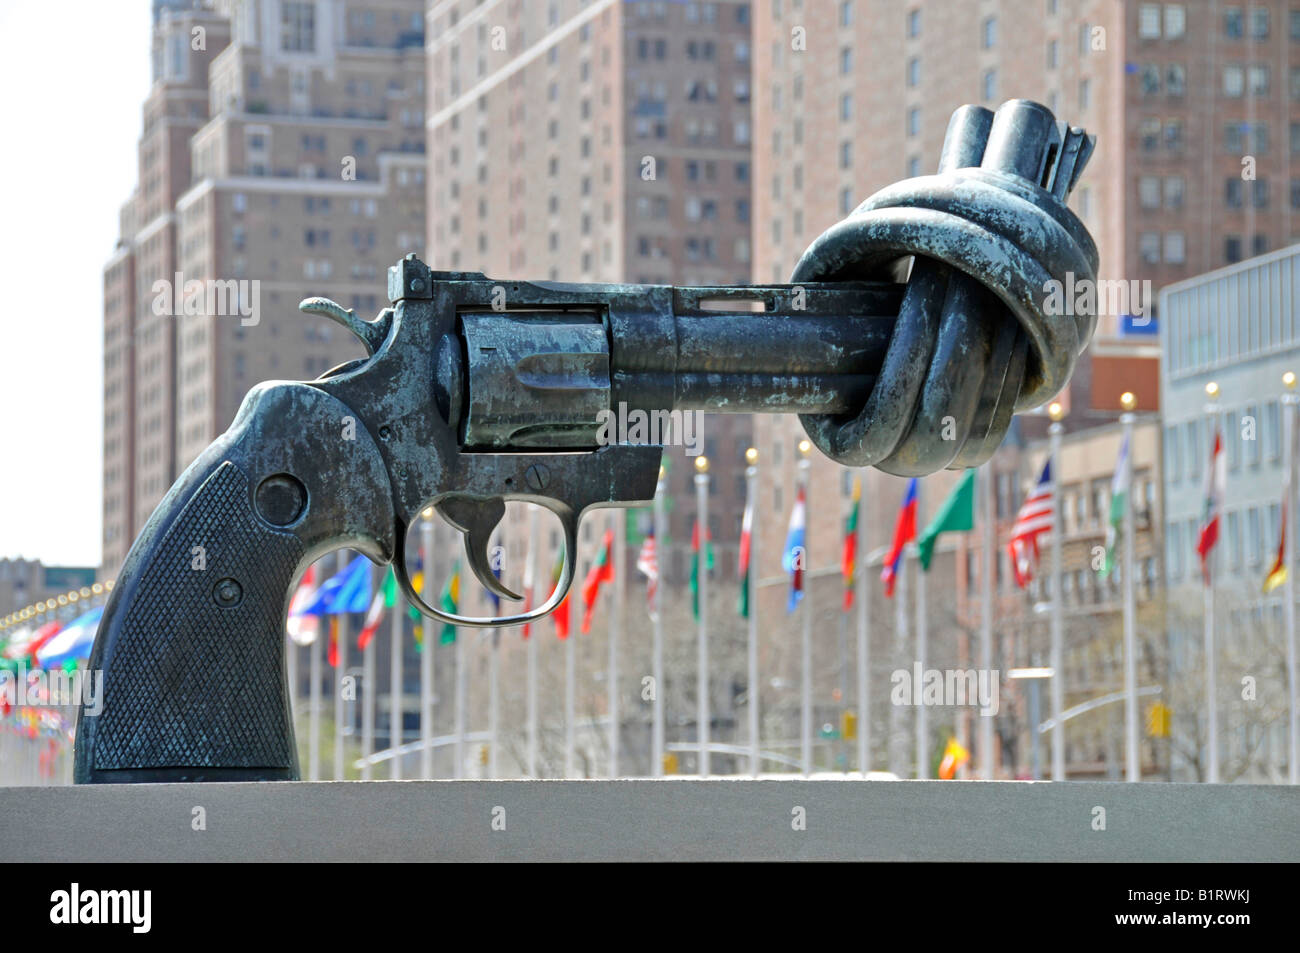 Nœud autour du canon d'une arme, la sculpture par l'artiste Carl Fredrik dans Reuterswaerd avant du siège DES NATIONS UNIES, New York C Banque D'Images